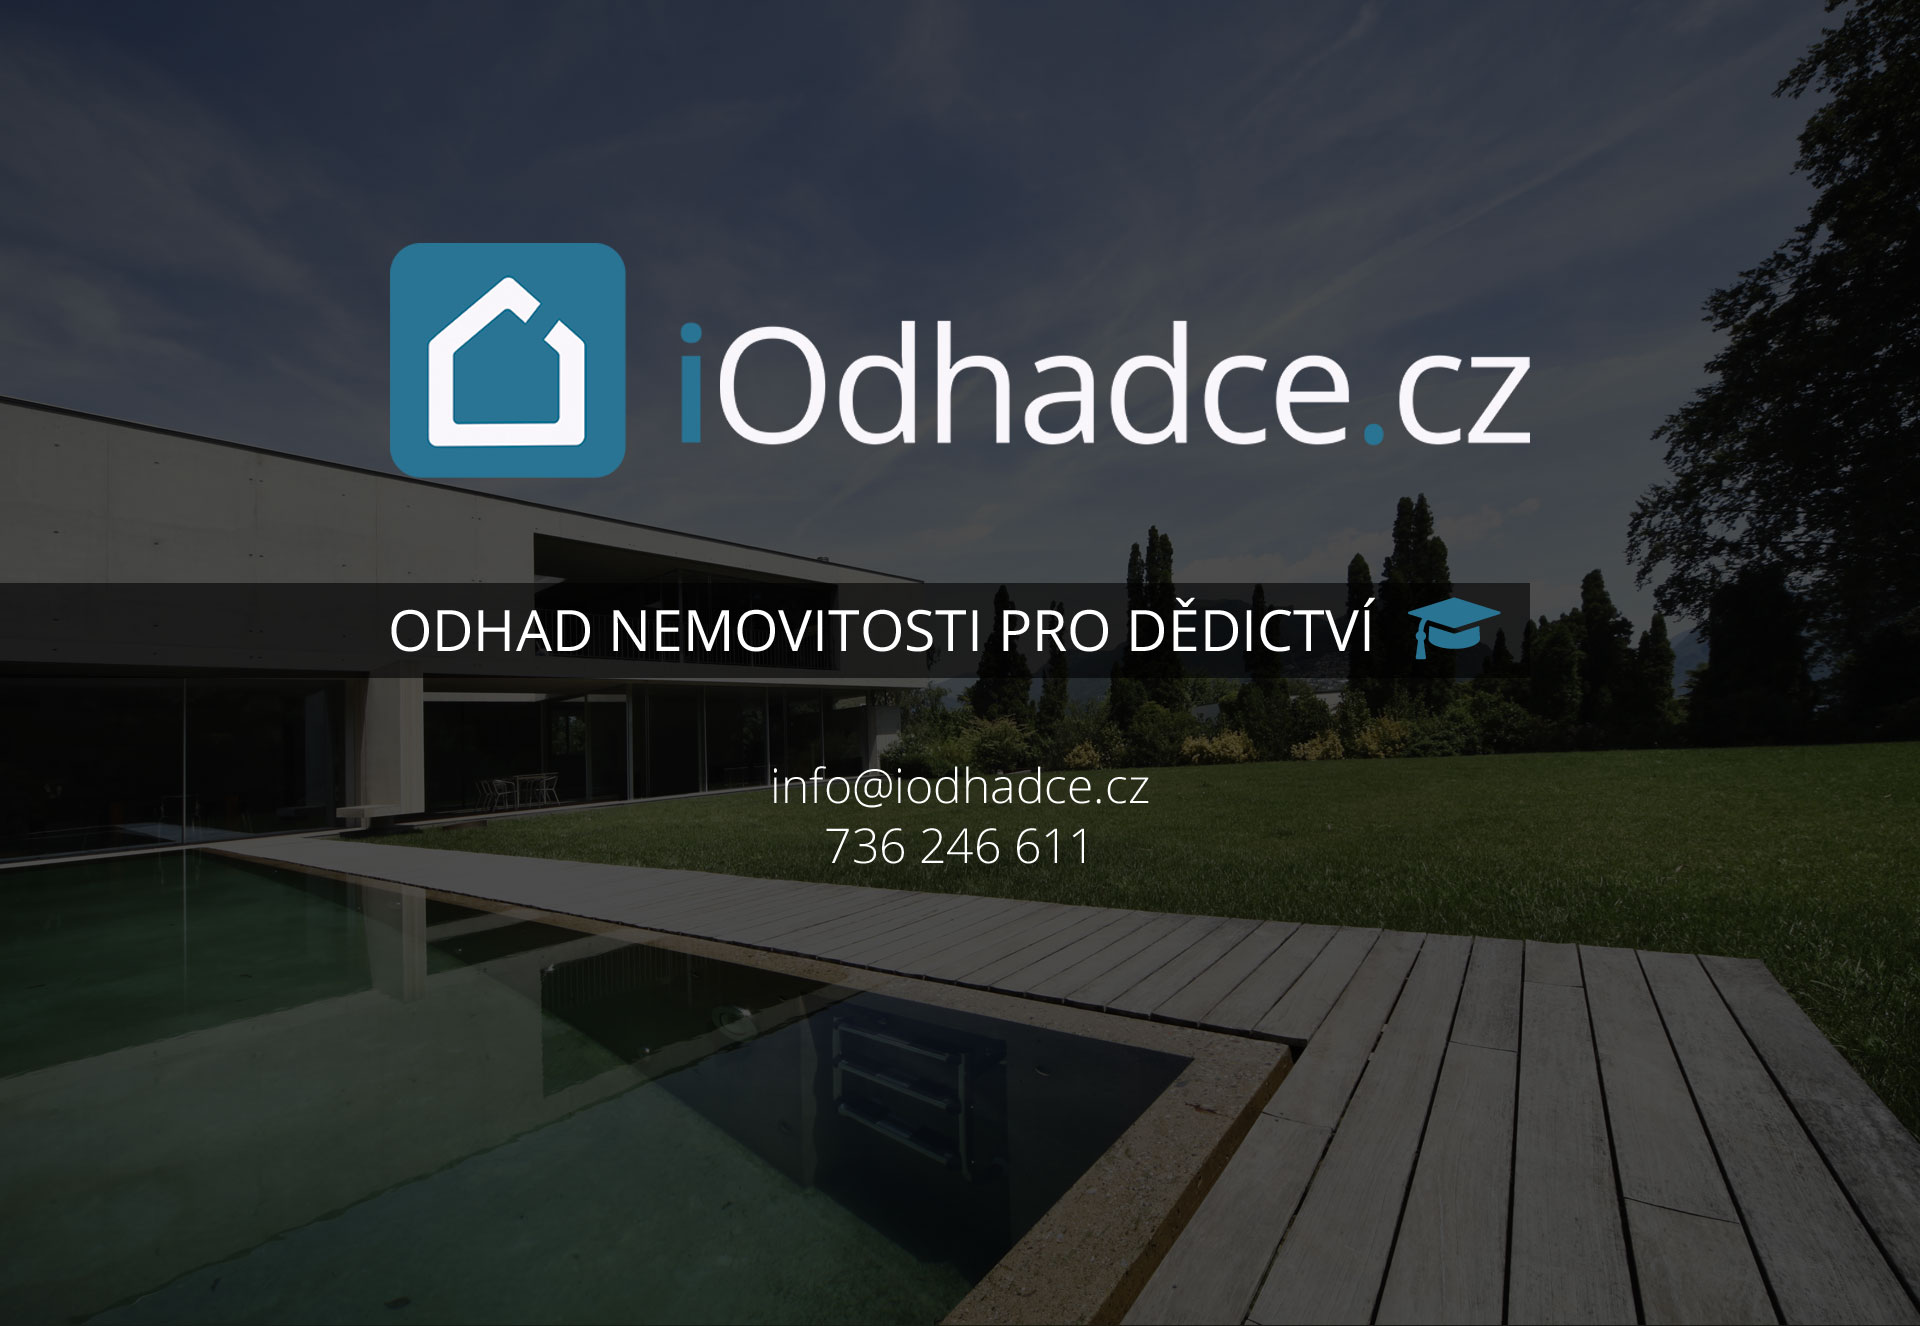 Vyjádření pro notáře Hradec Králové - iodhadce.cz